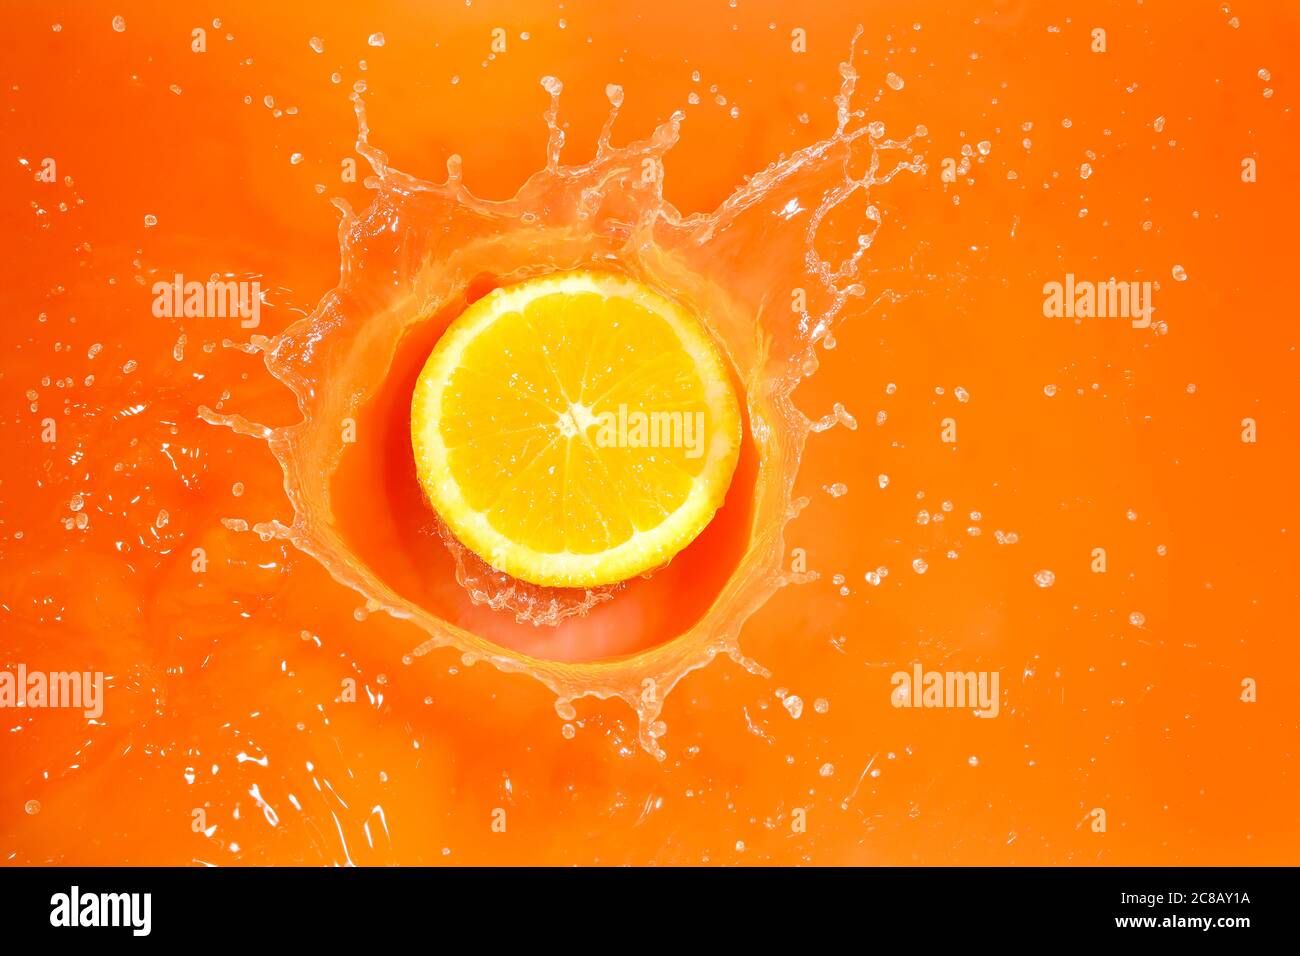 orange slice splashing into orange juice, high speed photography Stock Photo